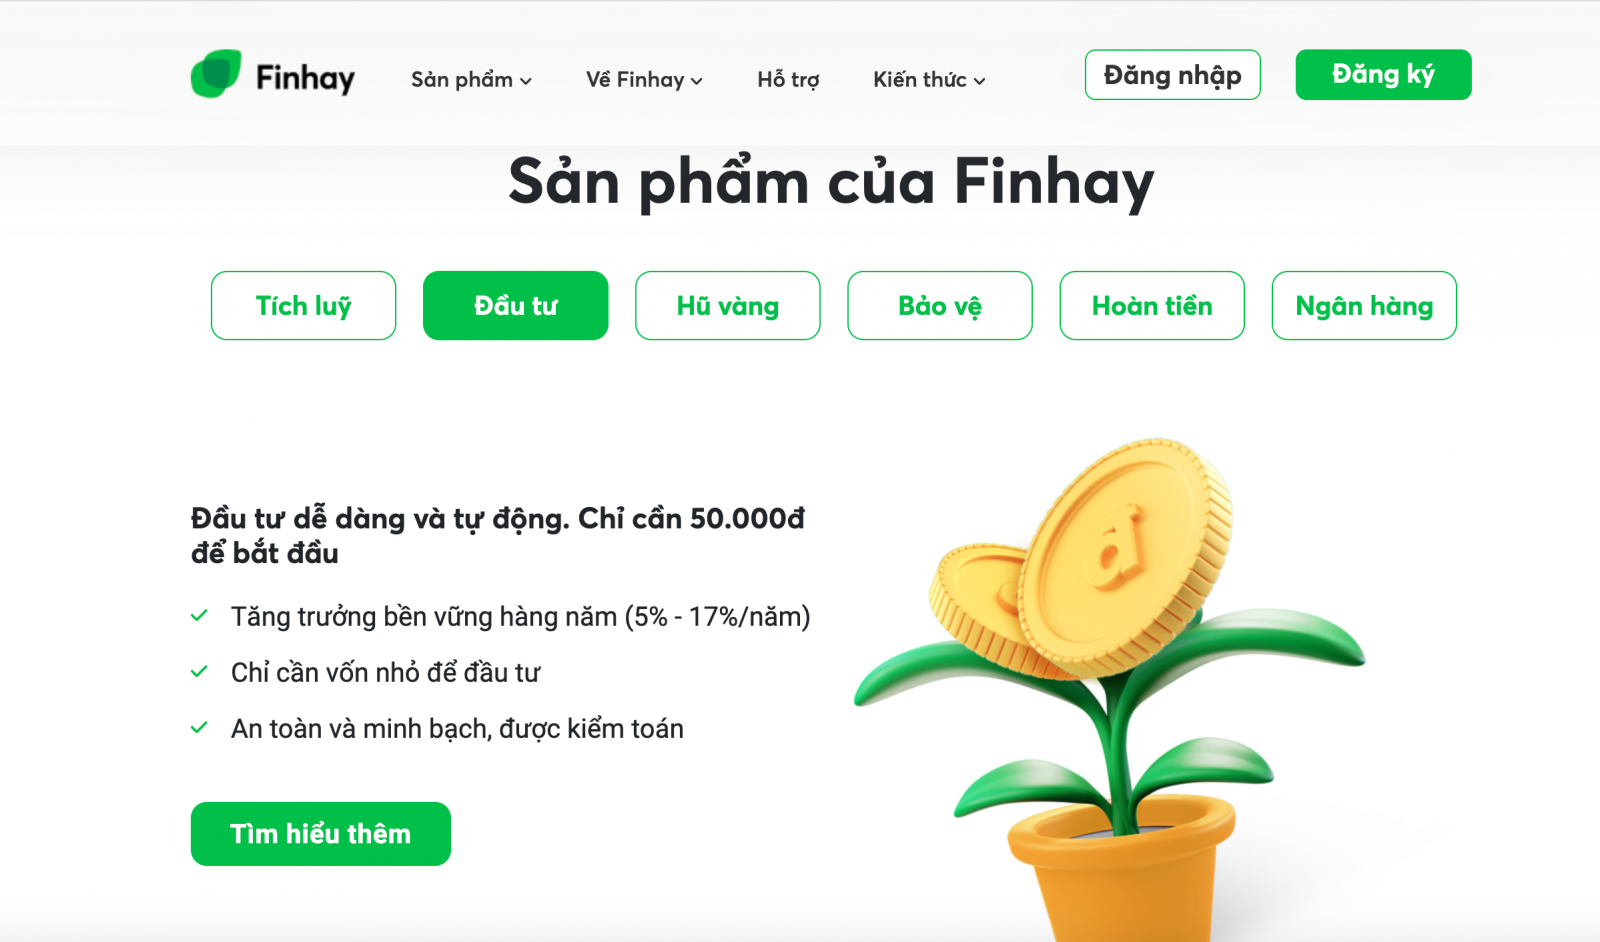 Finhay giới thiệu người dùng chỉ cần nạp từ 50.000 đồng trở lên thông qua app Finhay với lợi nhuận từ 5-17% một năm (ảnh chụp màn hình trên Finhay)